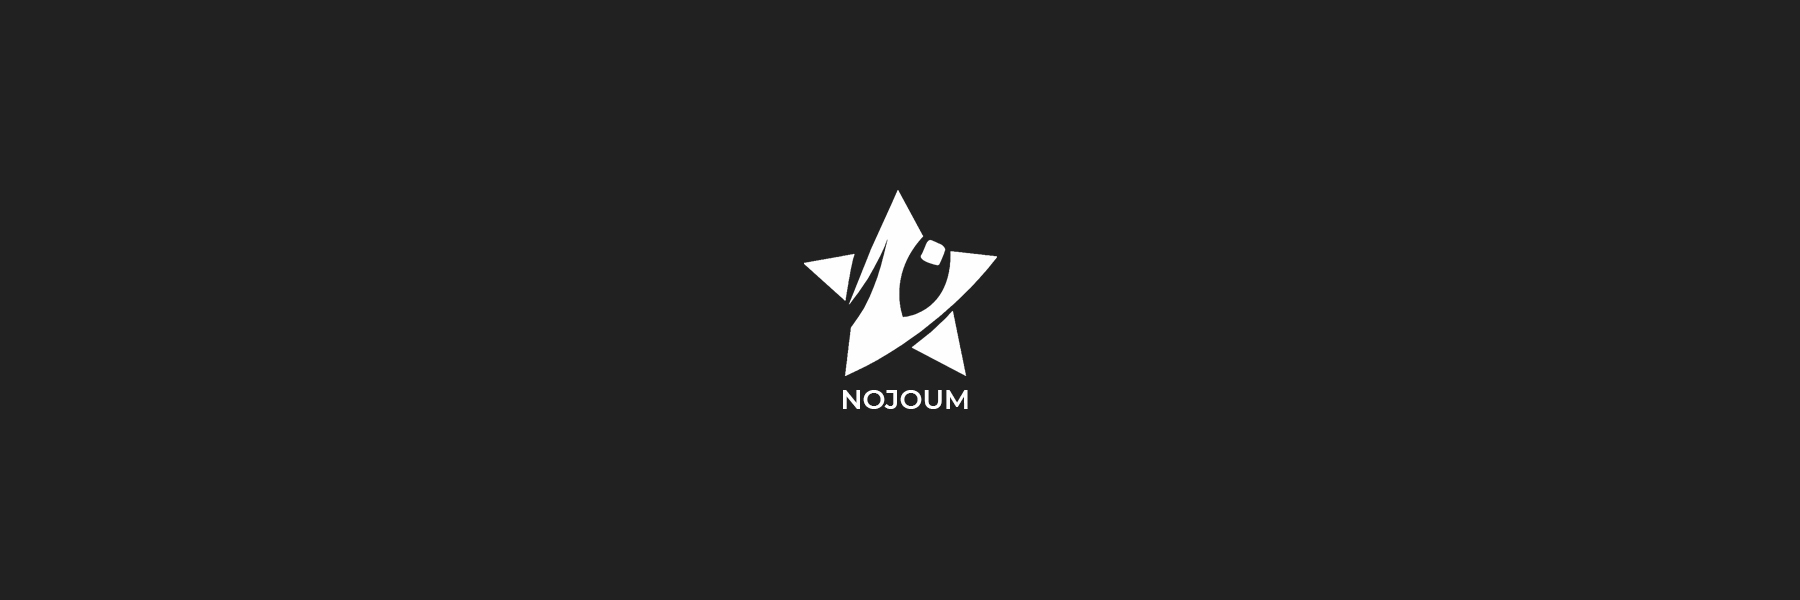 Nojoum-02